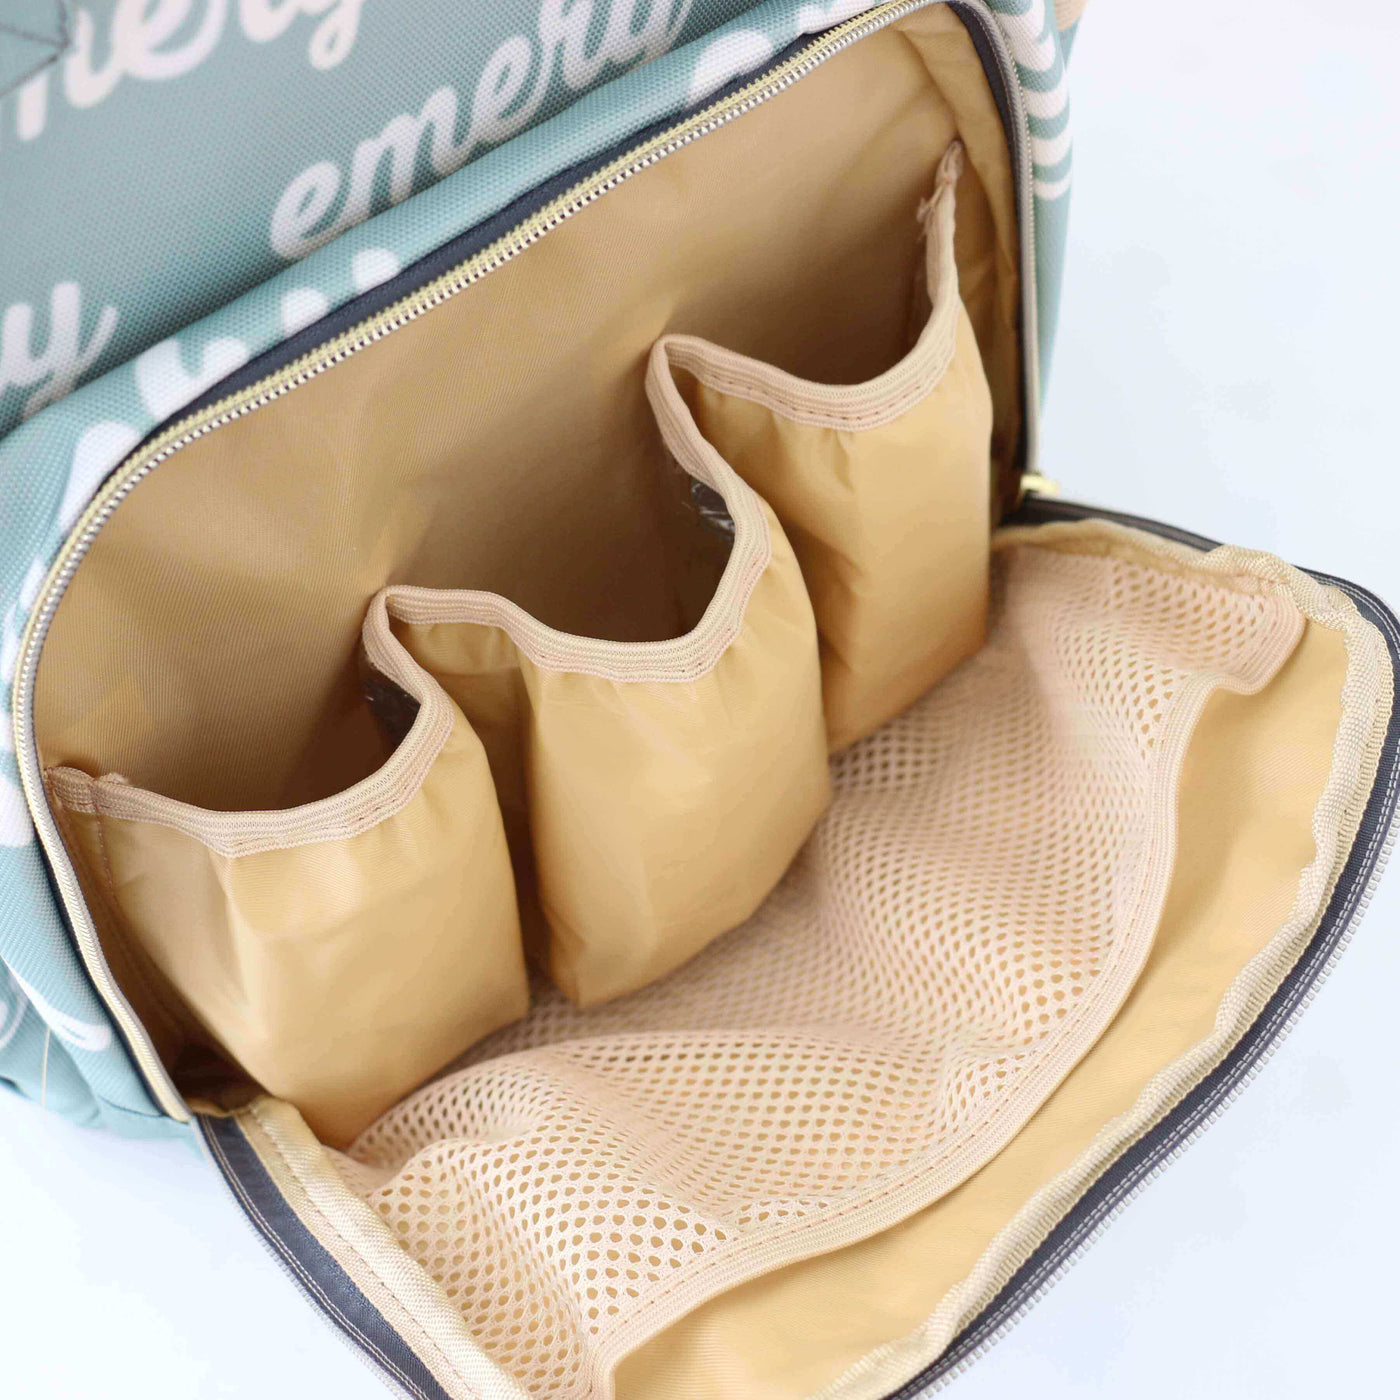 tan interior personalized diaper bag backpack